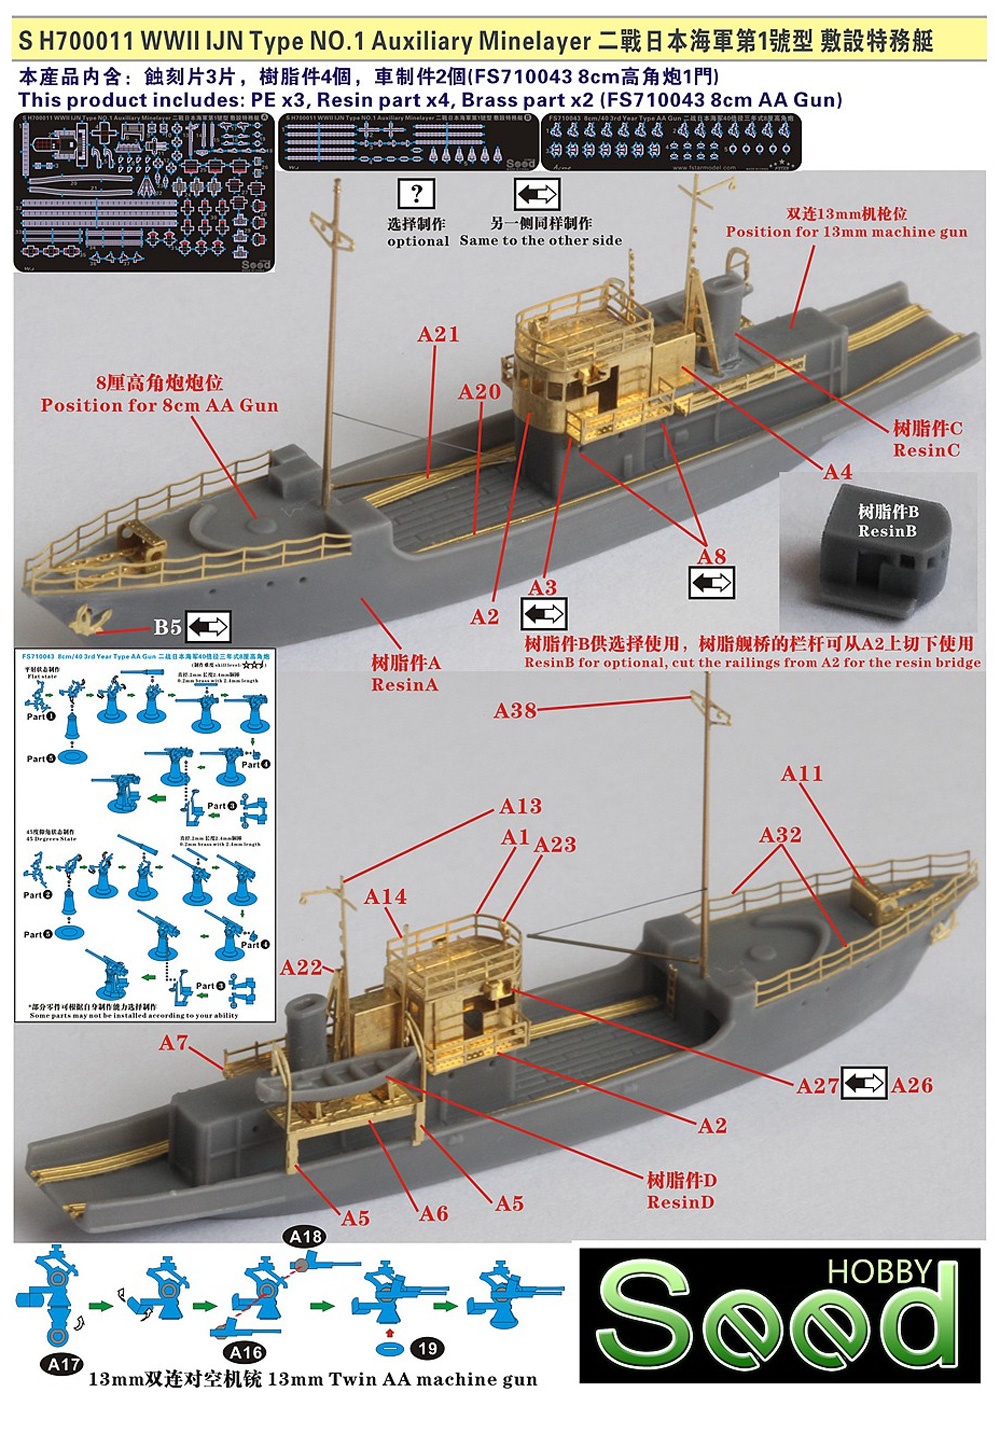 日本海軍 第1号型 敷設特務艇 レジン (Seed HOBBY 1/700 レジンキット No.SH700011) 商品画像_1